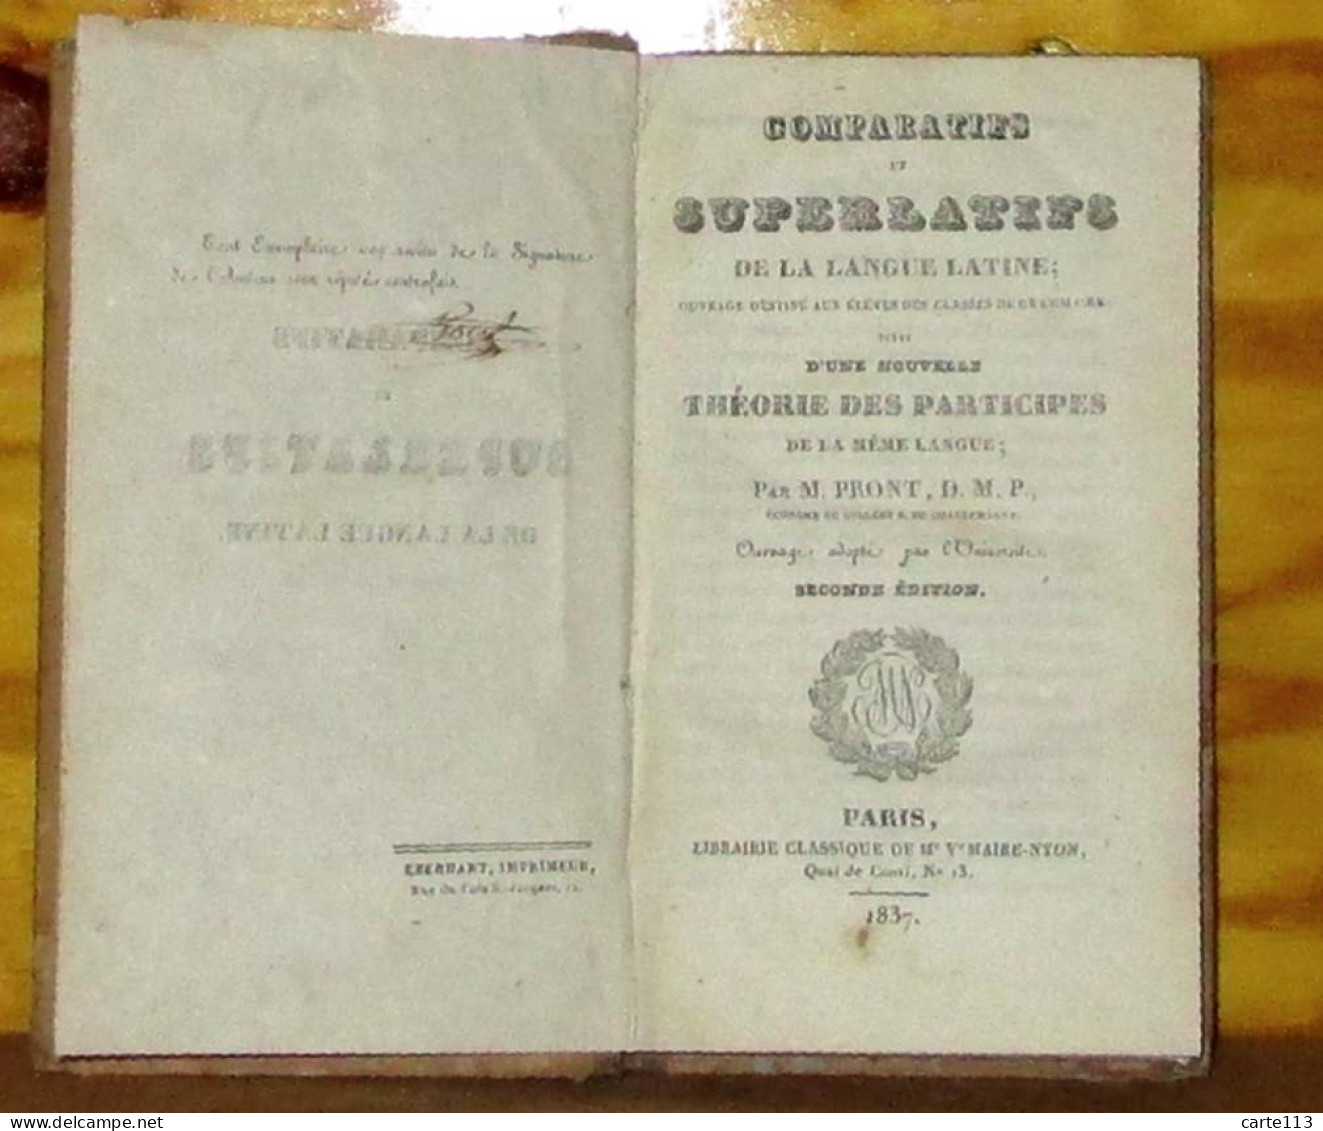 PRONT P., D.M.P.  - COMPARATIFS ET SUPERLATIFS DE LA LANGUE LATINE - 1801-1900